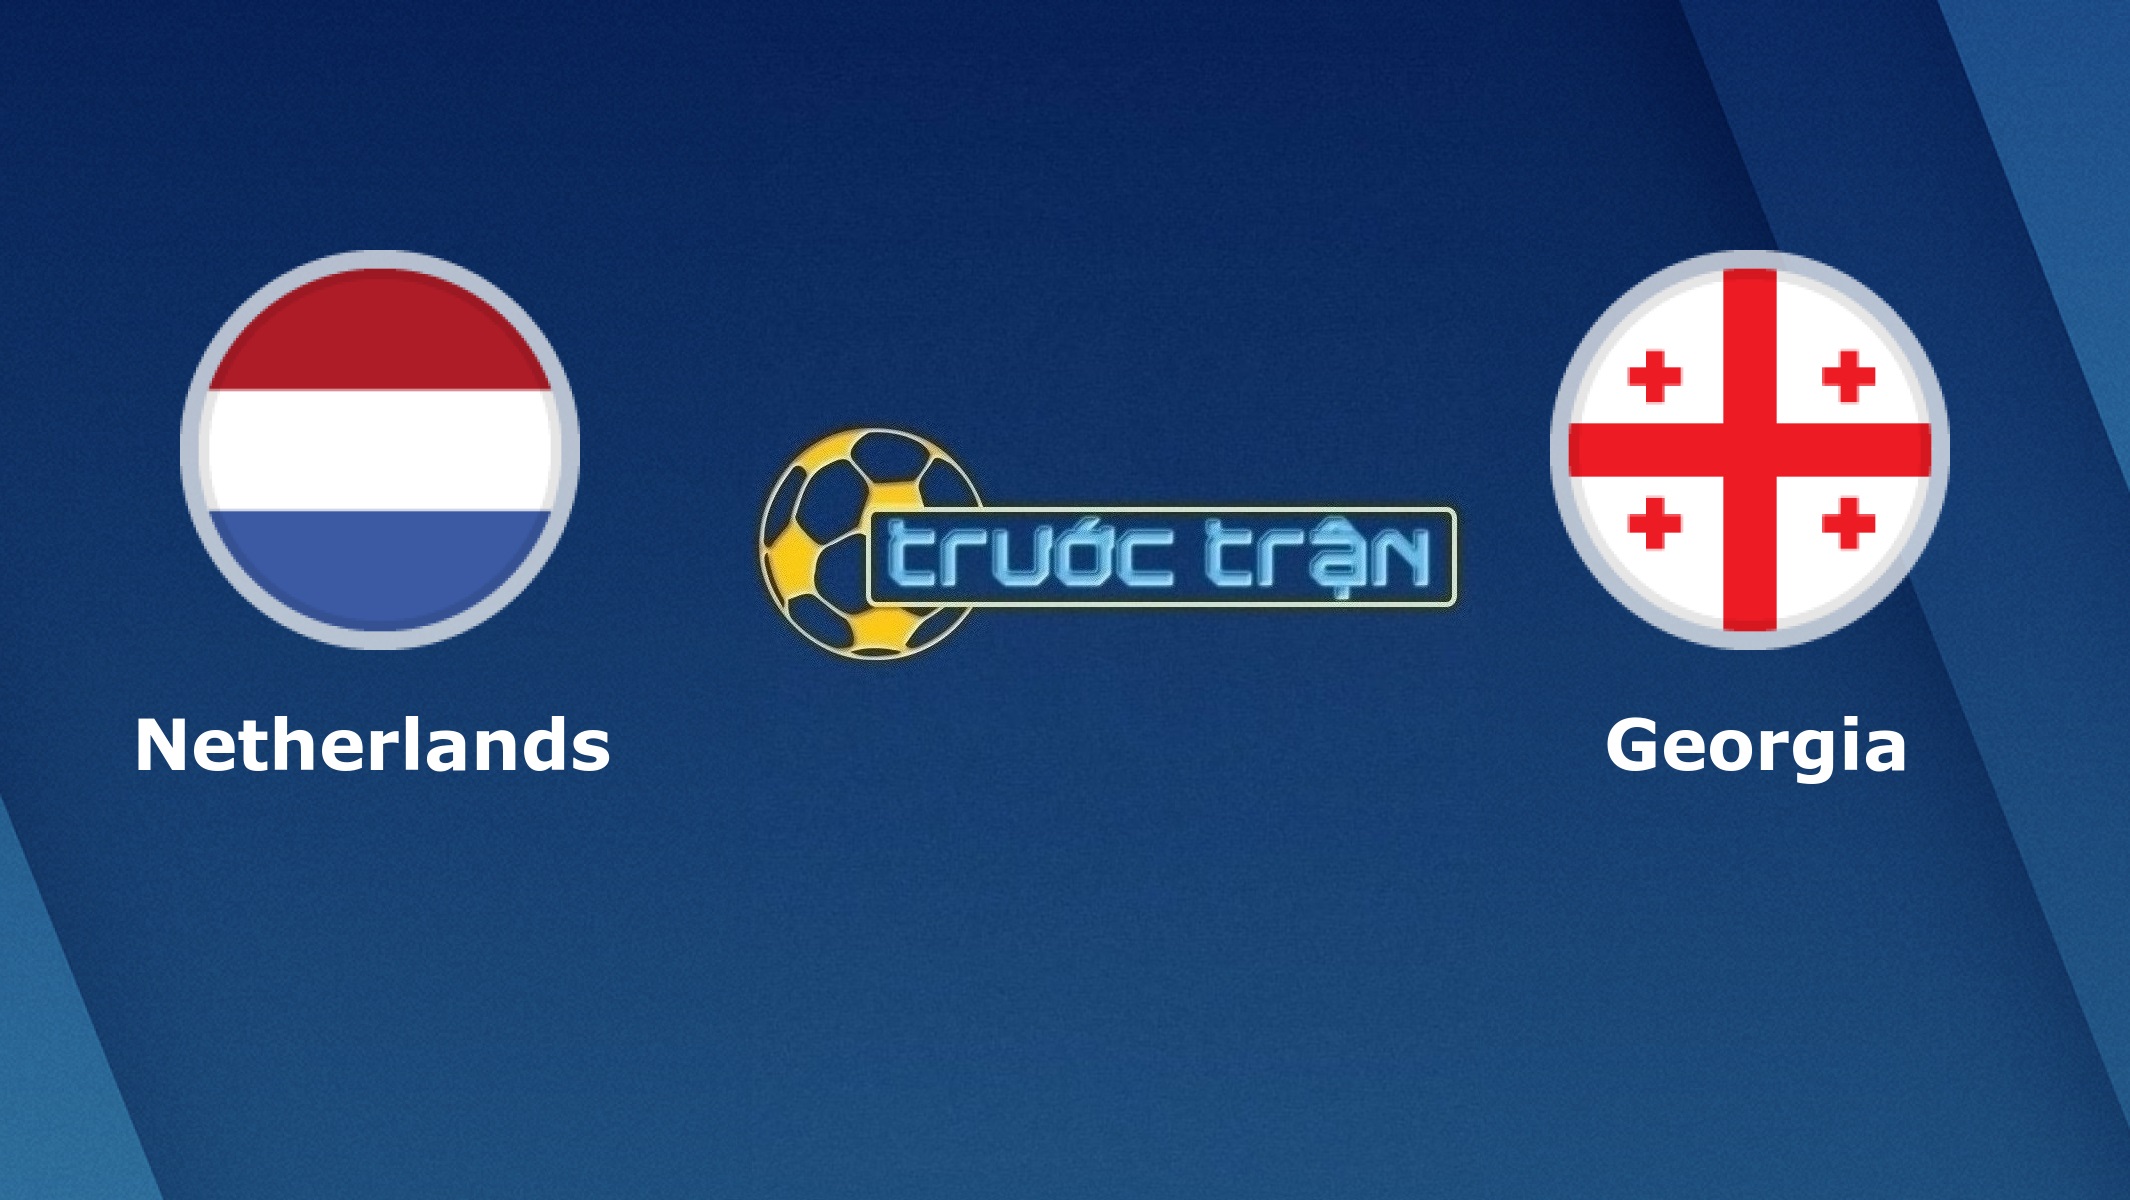 Hà Lan vs Georgia – Tip kèo bóng đá hôm nay – 23h00 06/06/2021